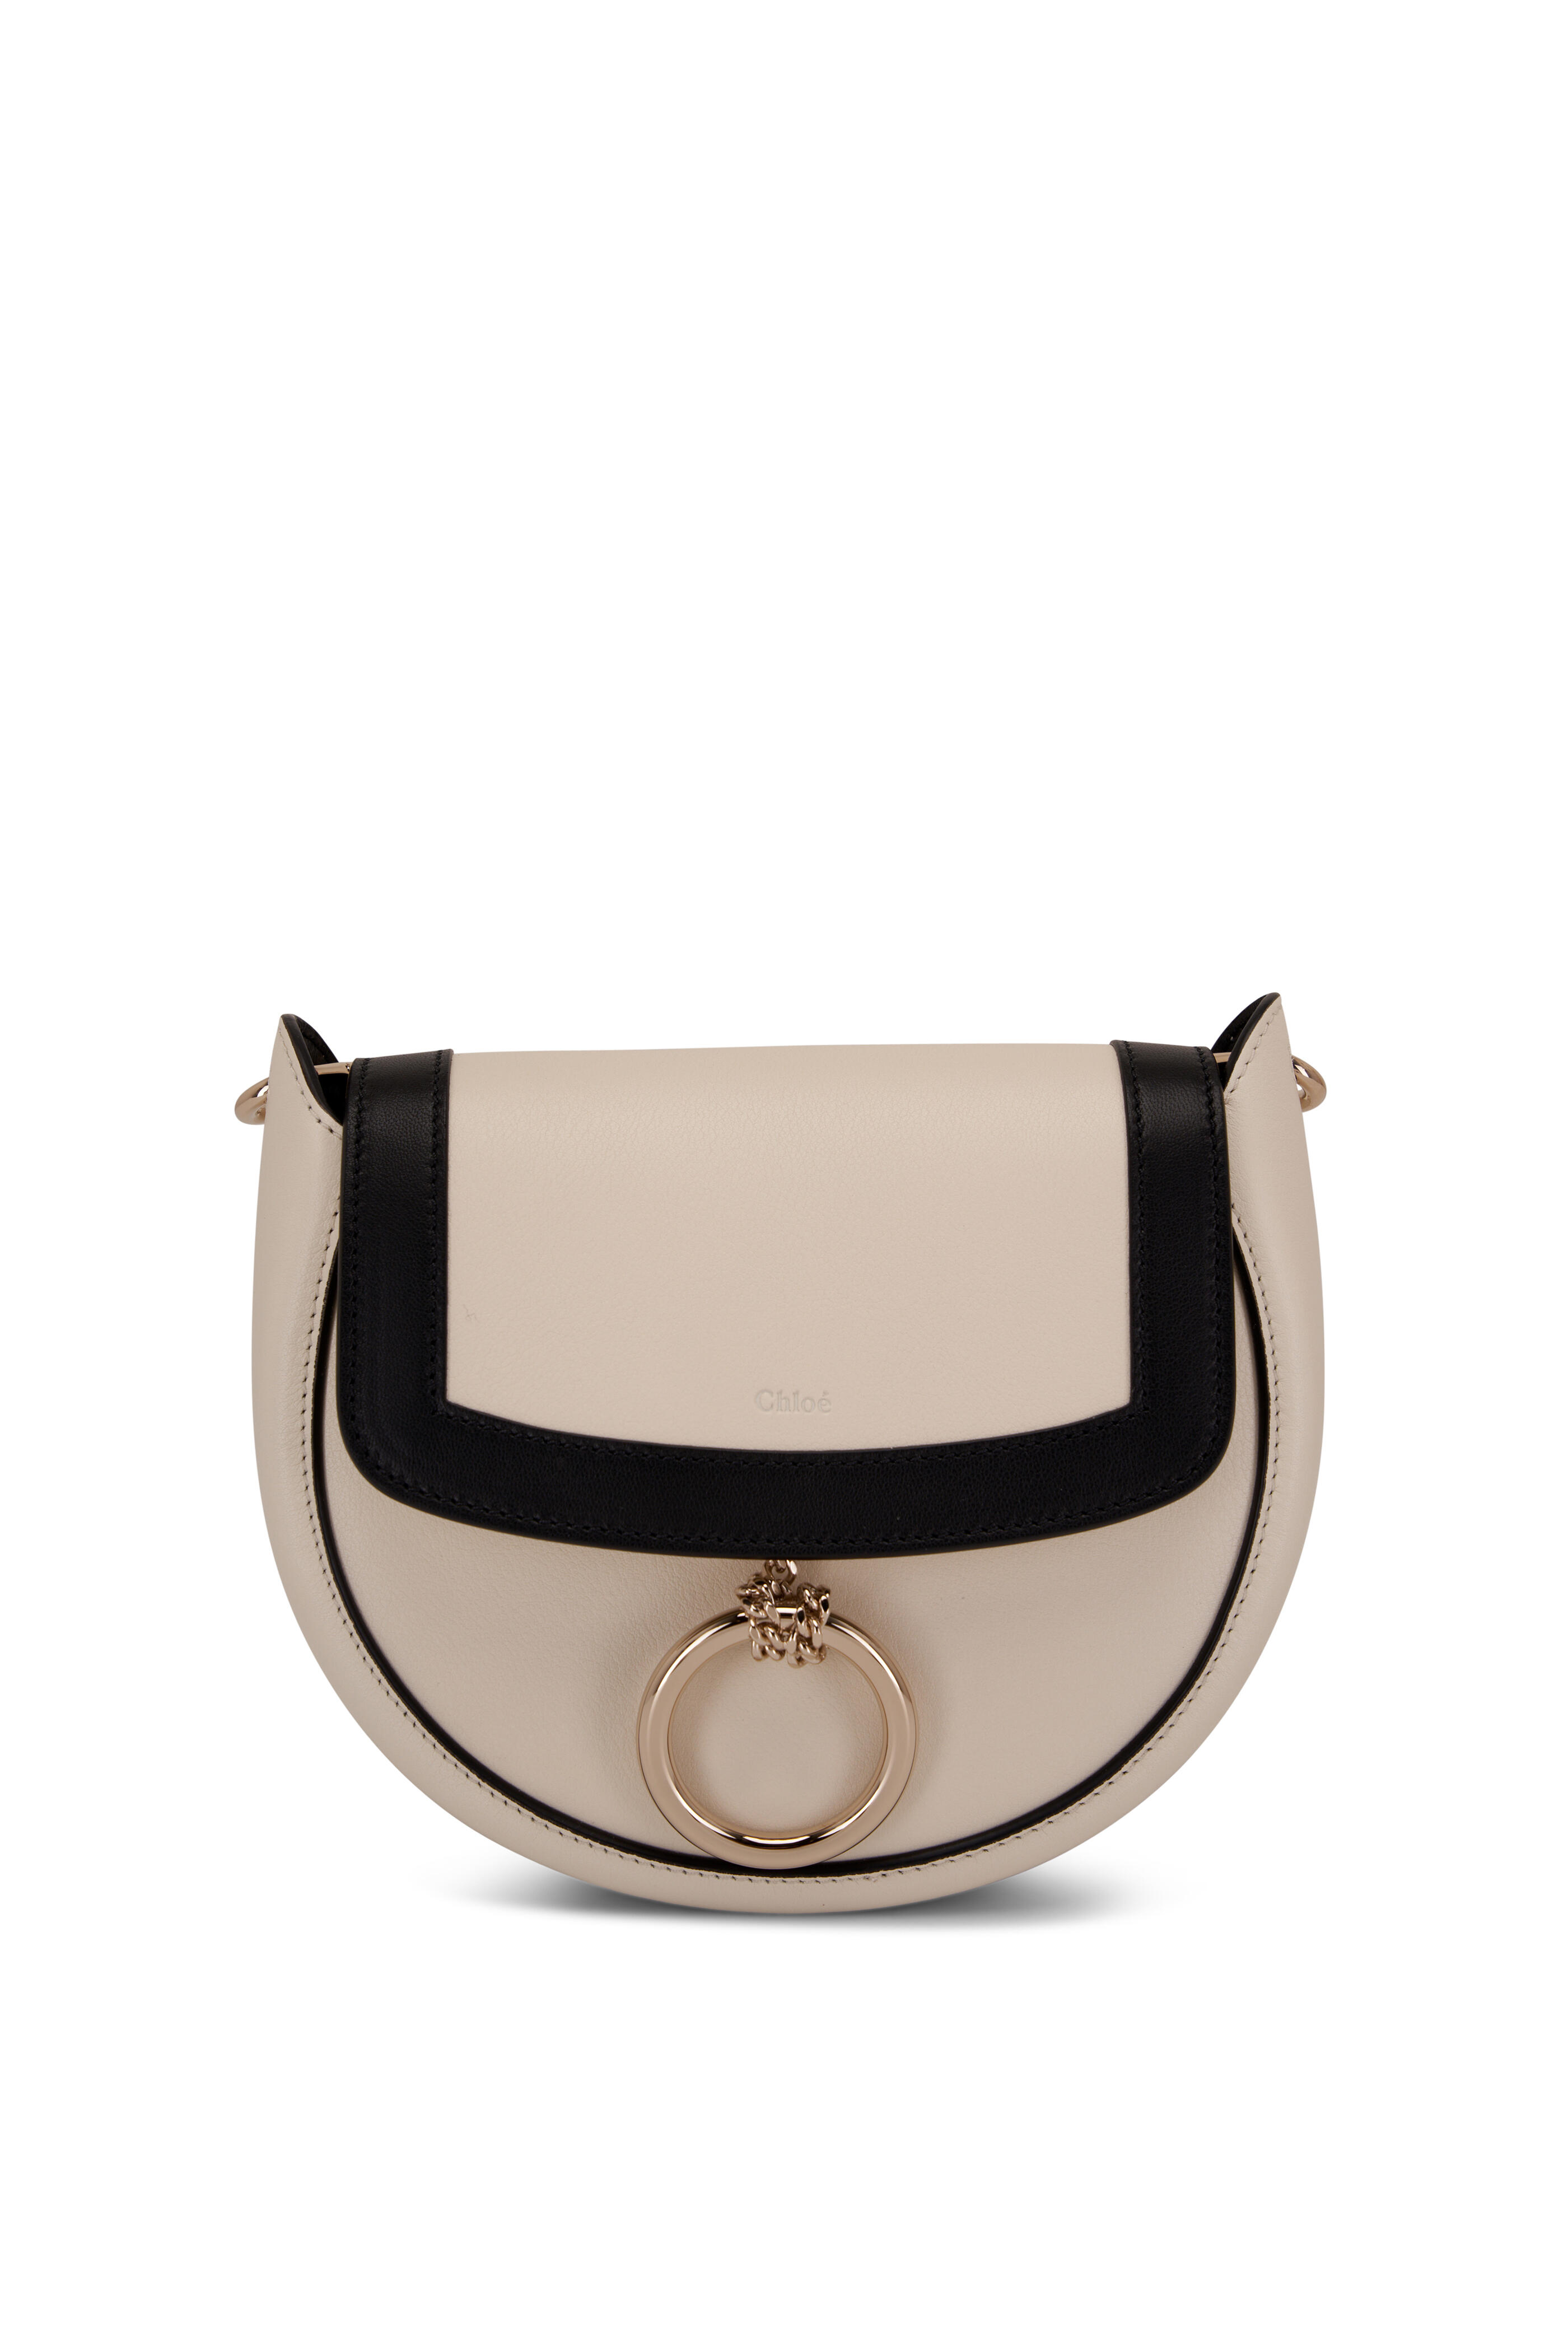 Black and White Python Handbag Purse Designer Doop for Sale in